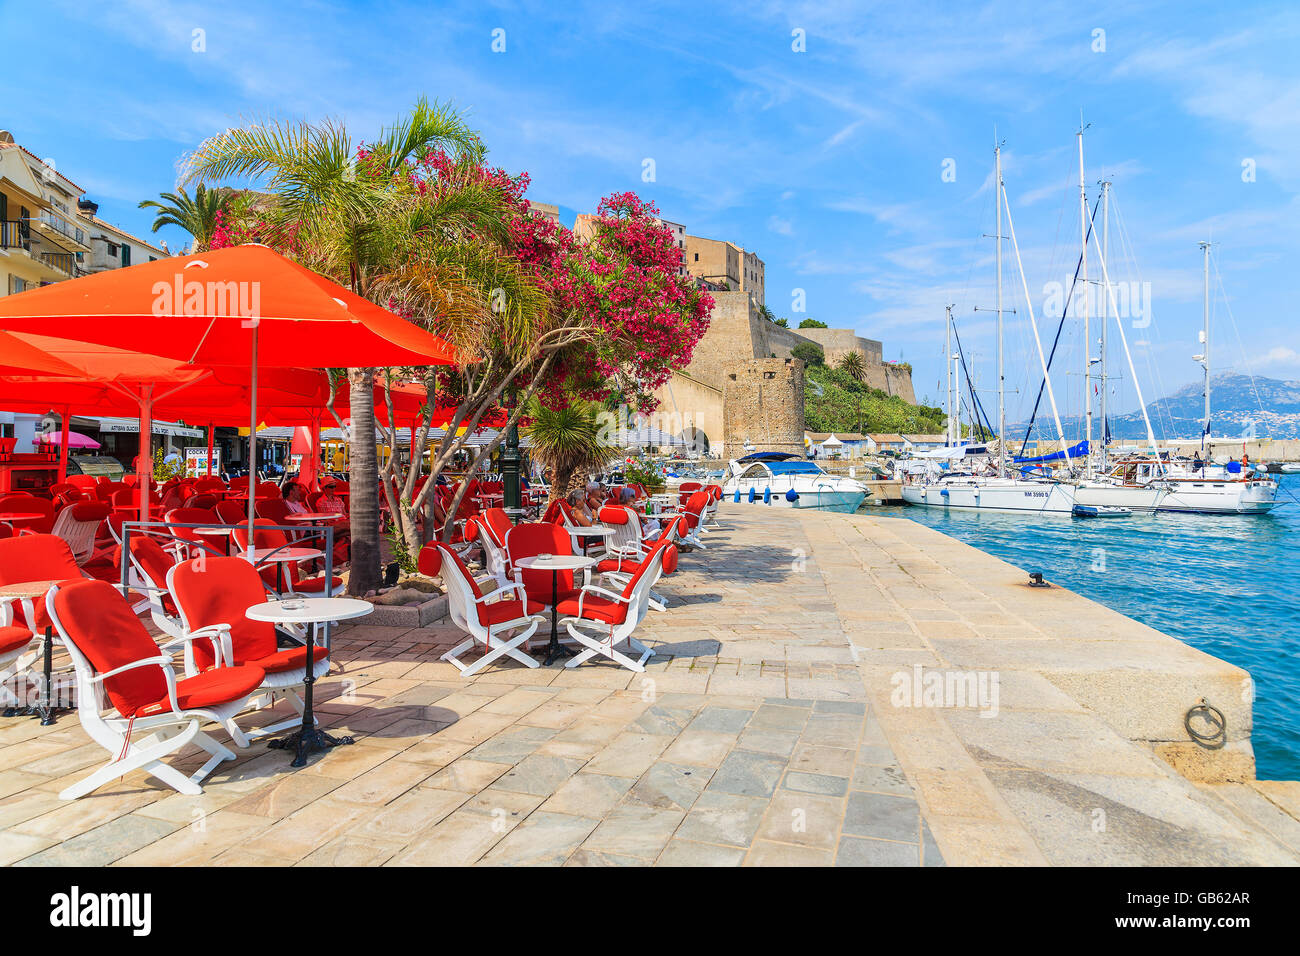 Hafen von CALVI, Korsika - 28. Juni 2015: Blick auf Restaurant und Zitadelle mit befindet sich im Hafen von Calvi. Diese Stadt hat luxuriöse mar Stockfoto